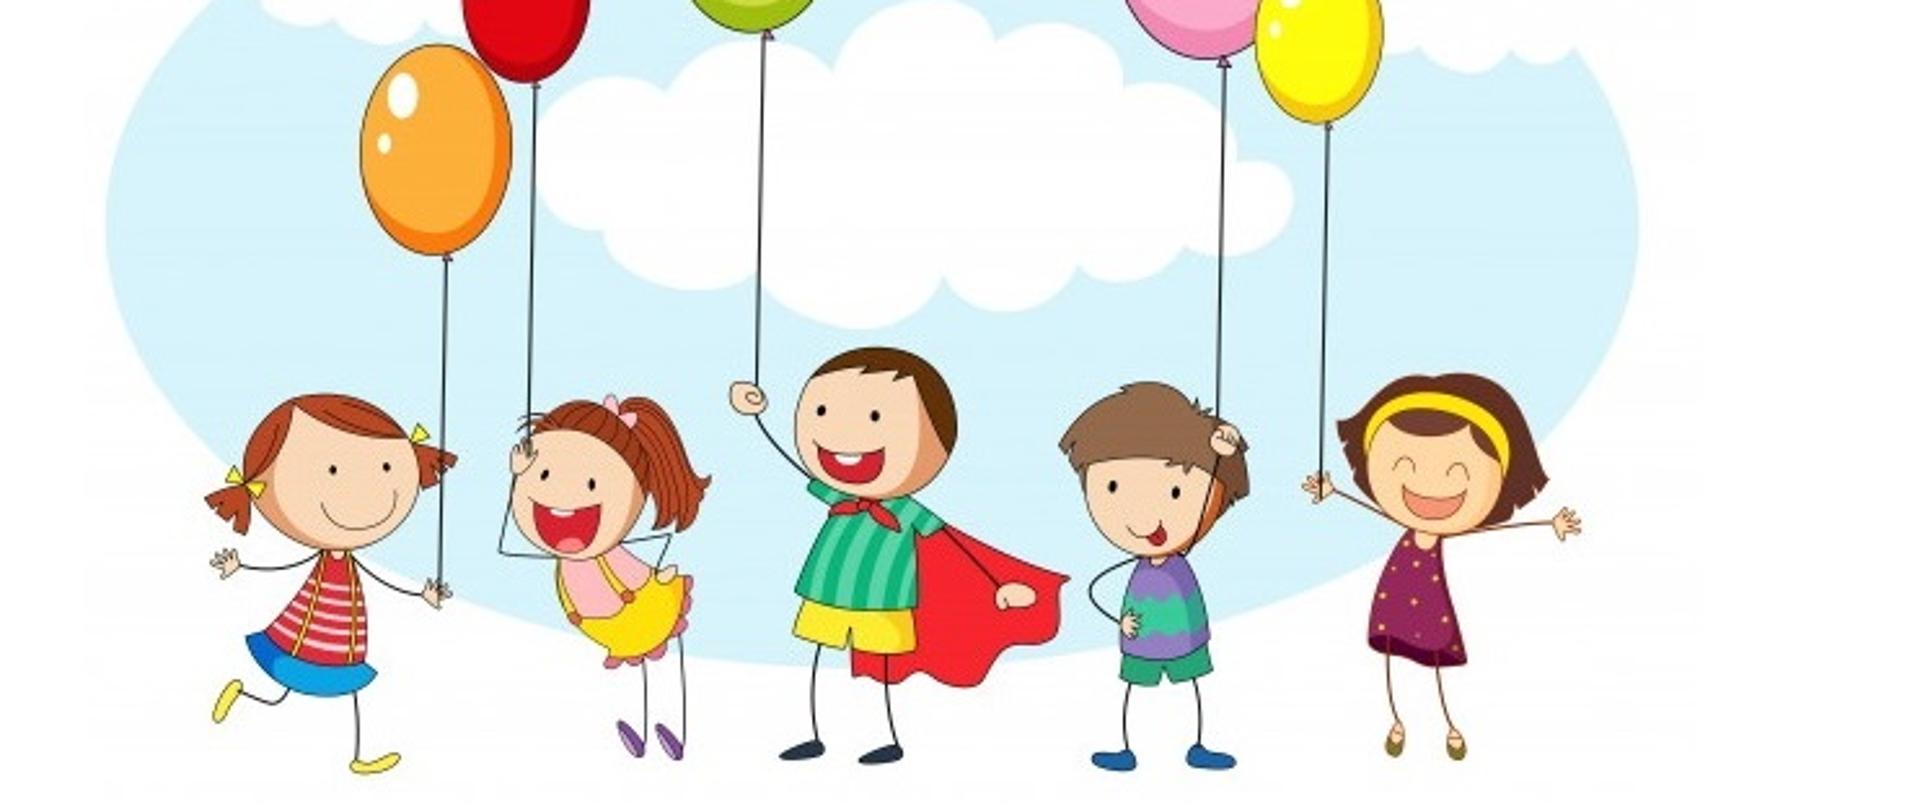 Grafiki dzieci trzymających kolorowe balony.
